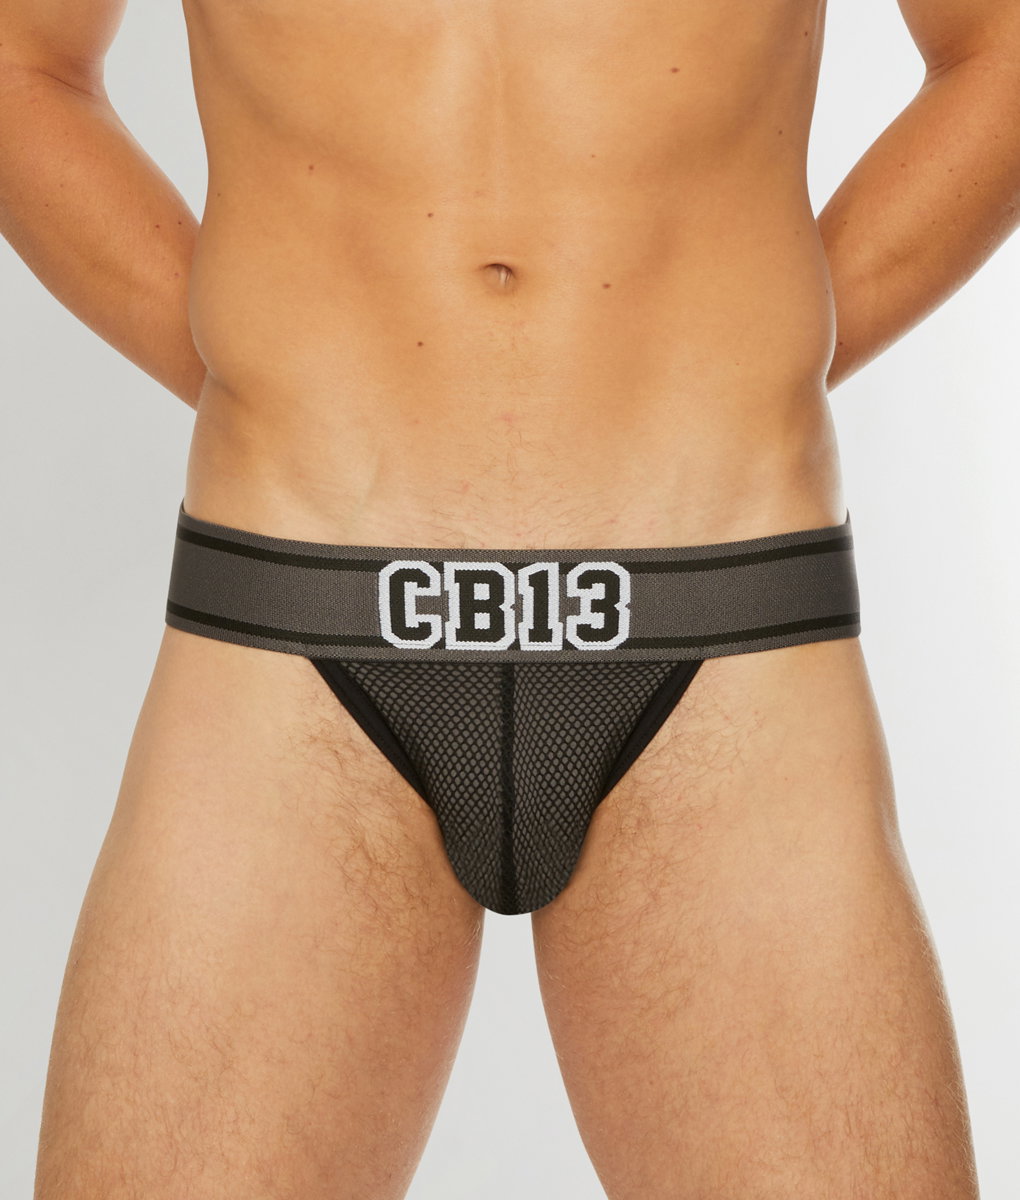 Underwear Expert: New Arrivals: PUMP!, C-IN2, Code 22, HOM, Cellblock 13